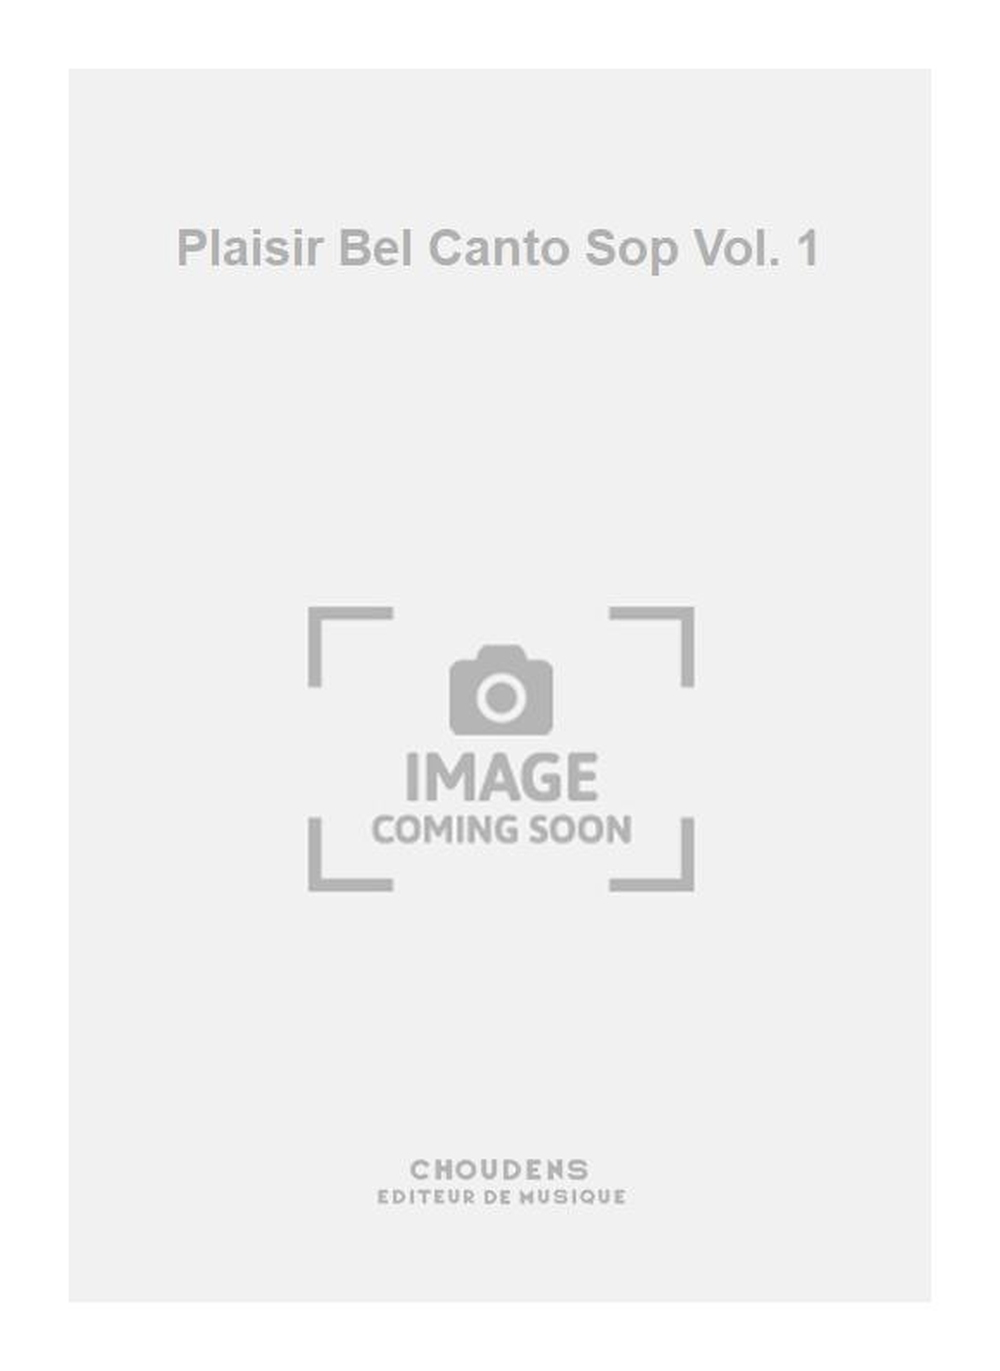 Plaisir Bel Canto Sop Vol. 1